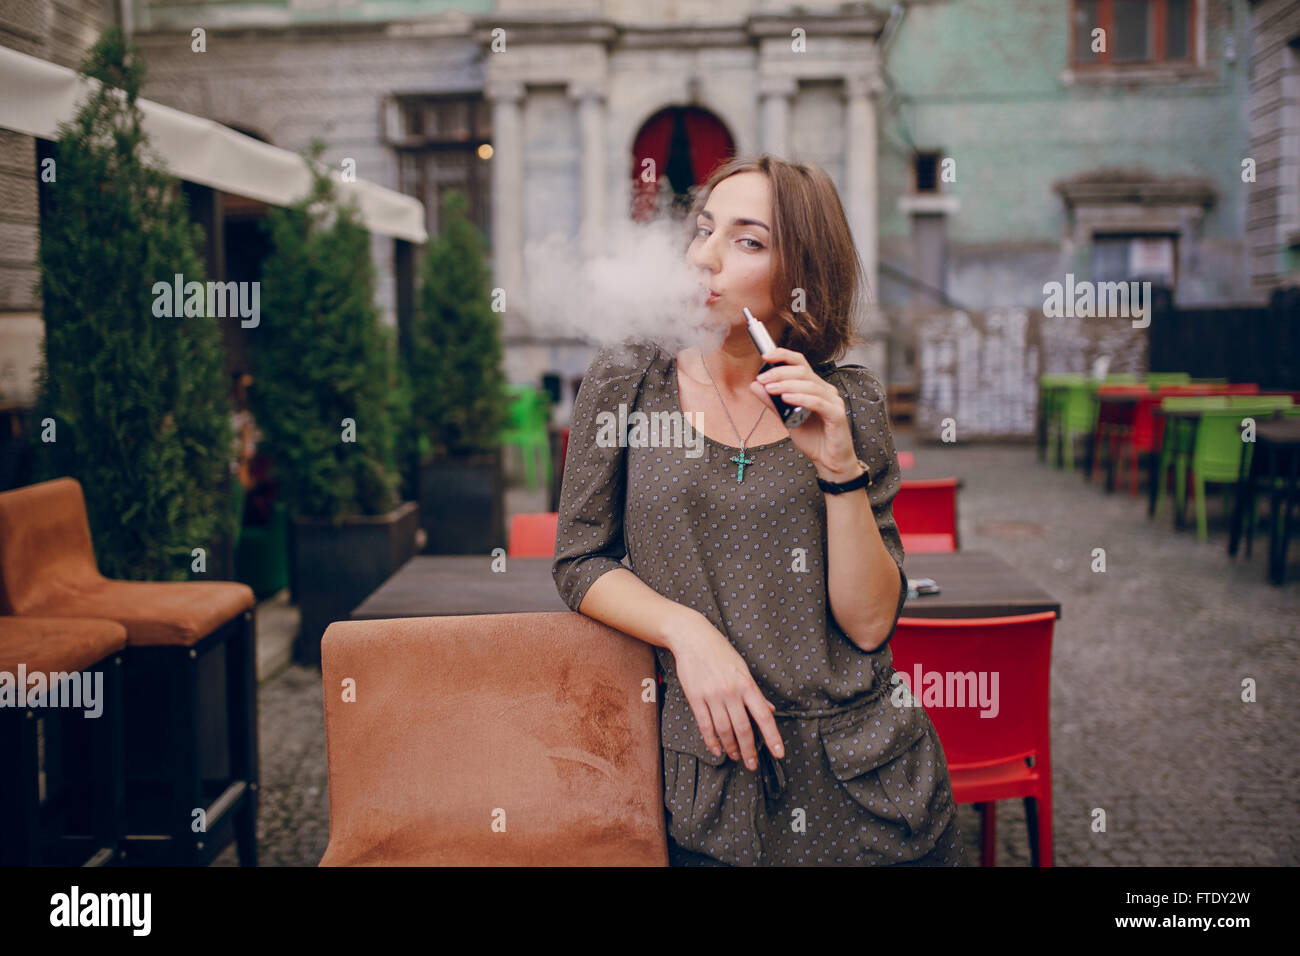 girl with E-cigarette Stock Photo